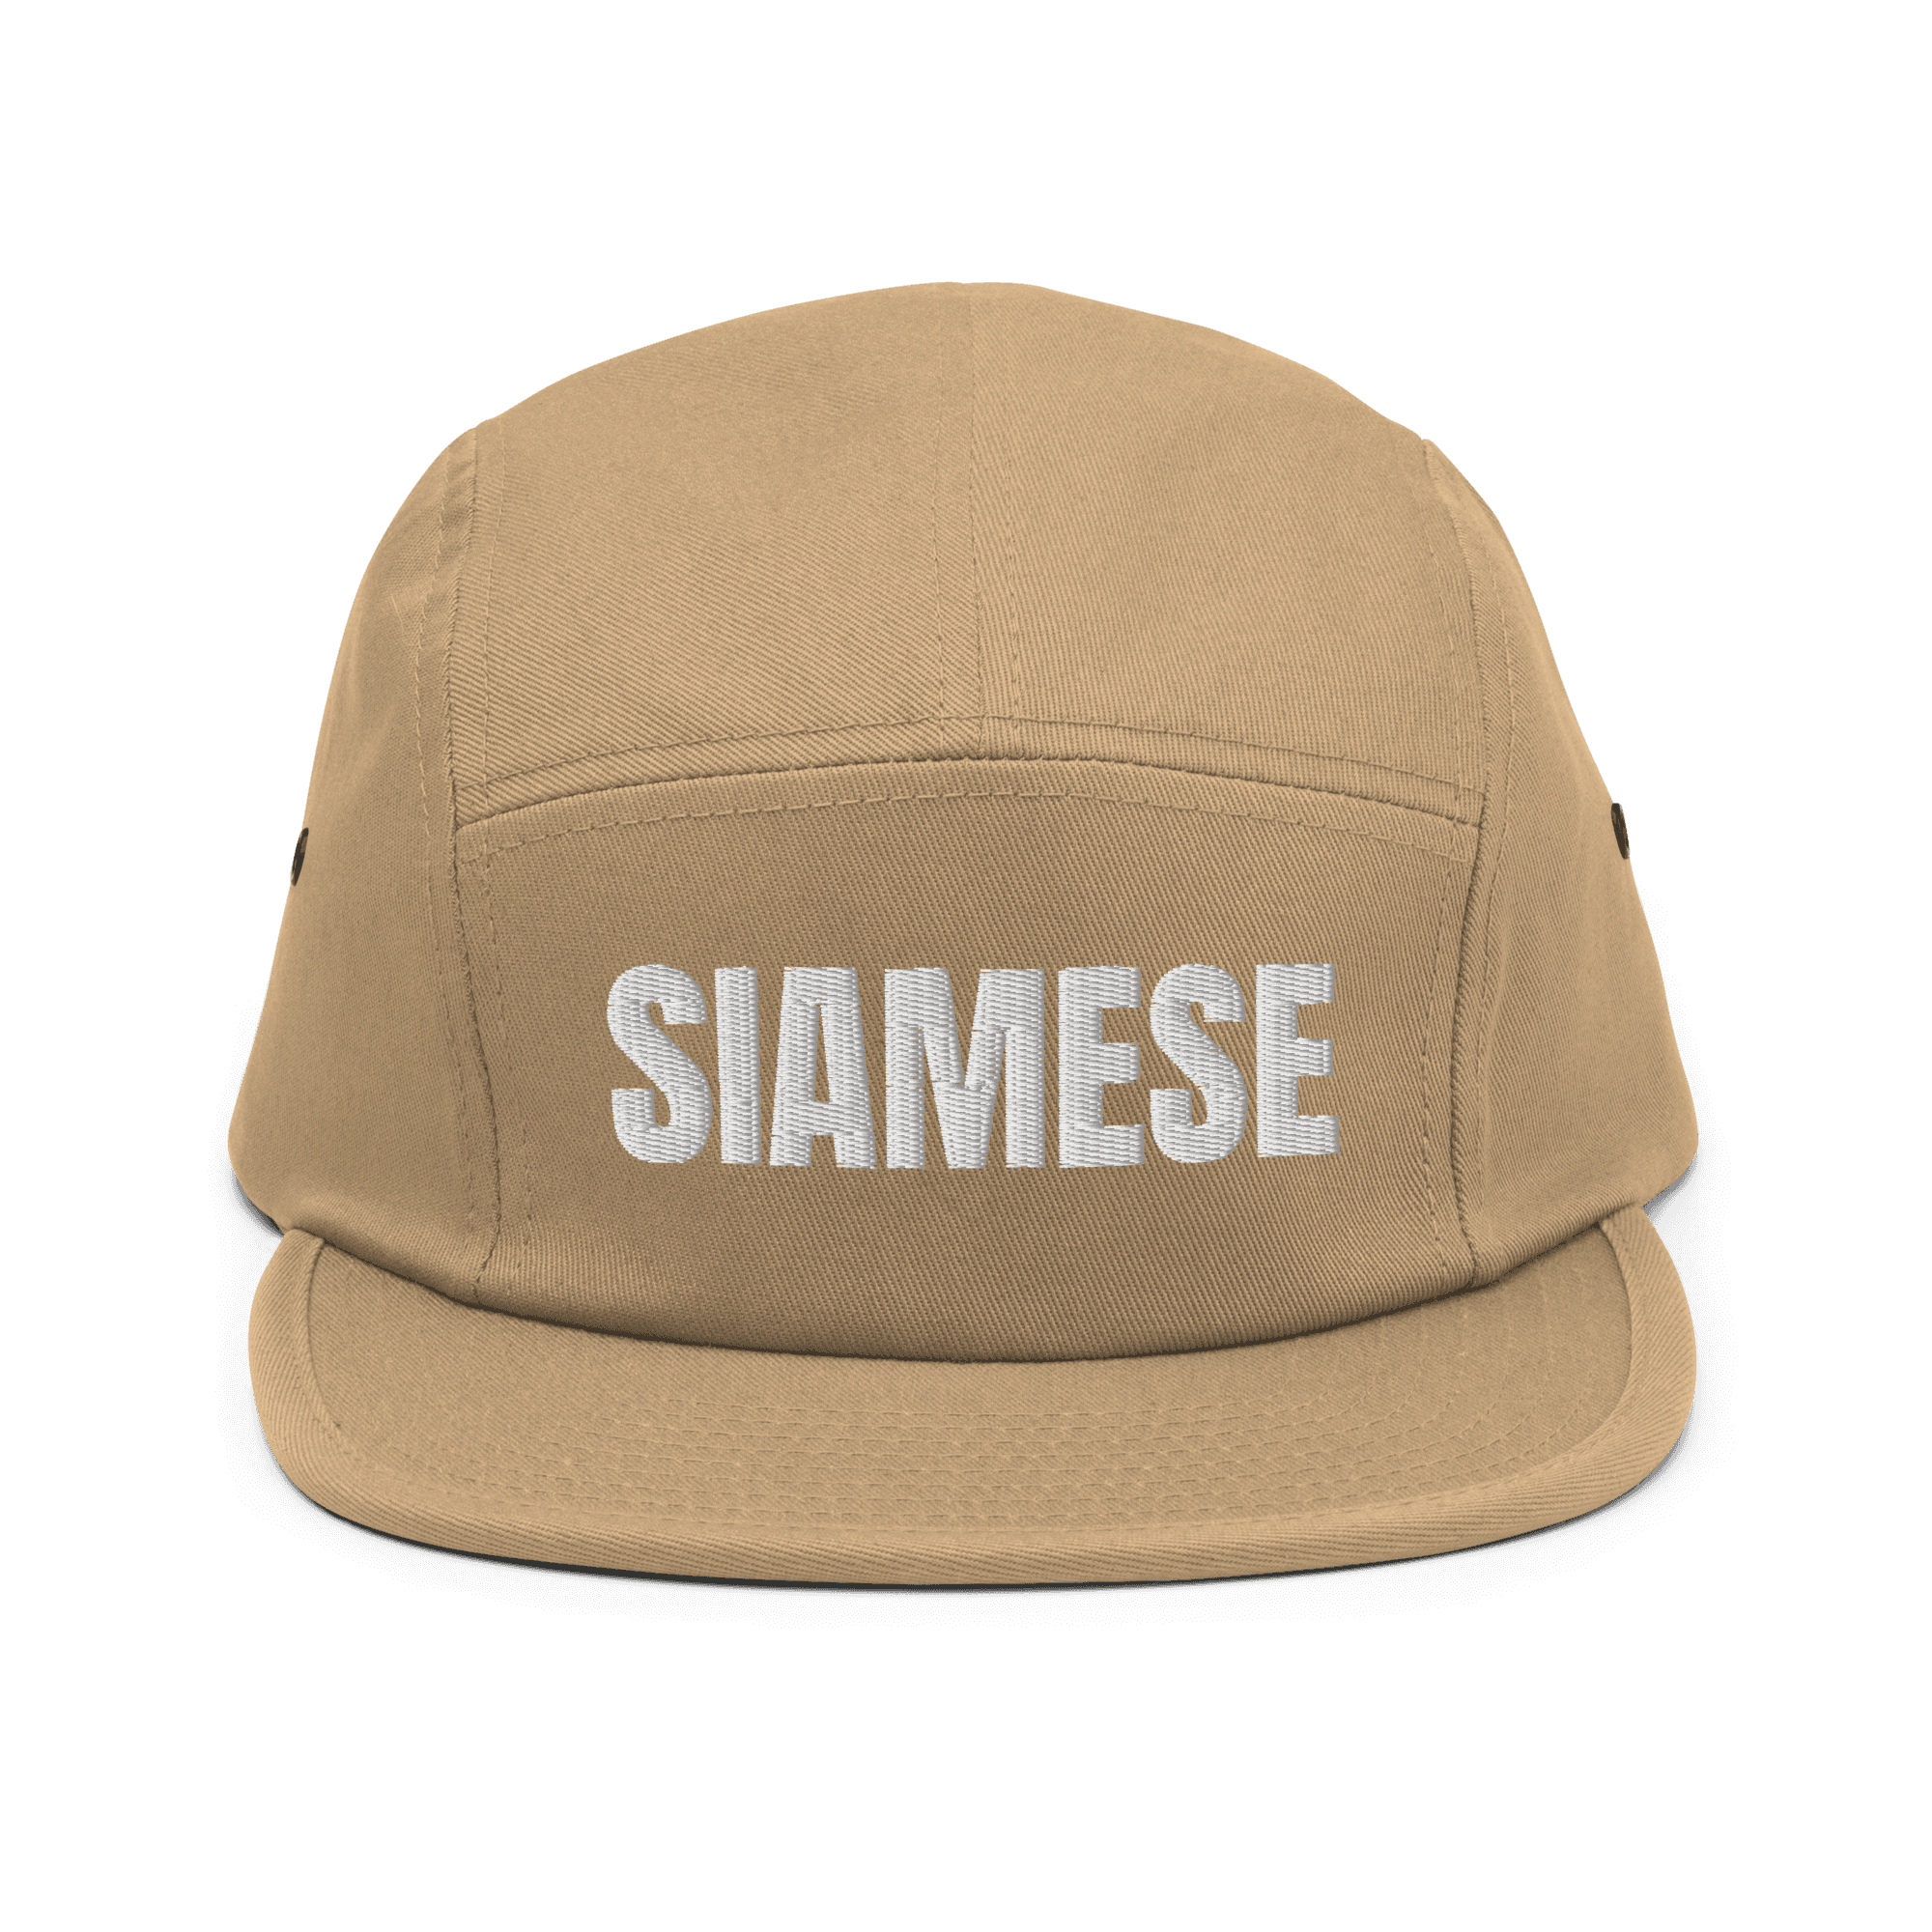 Siamese Cap image 0